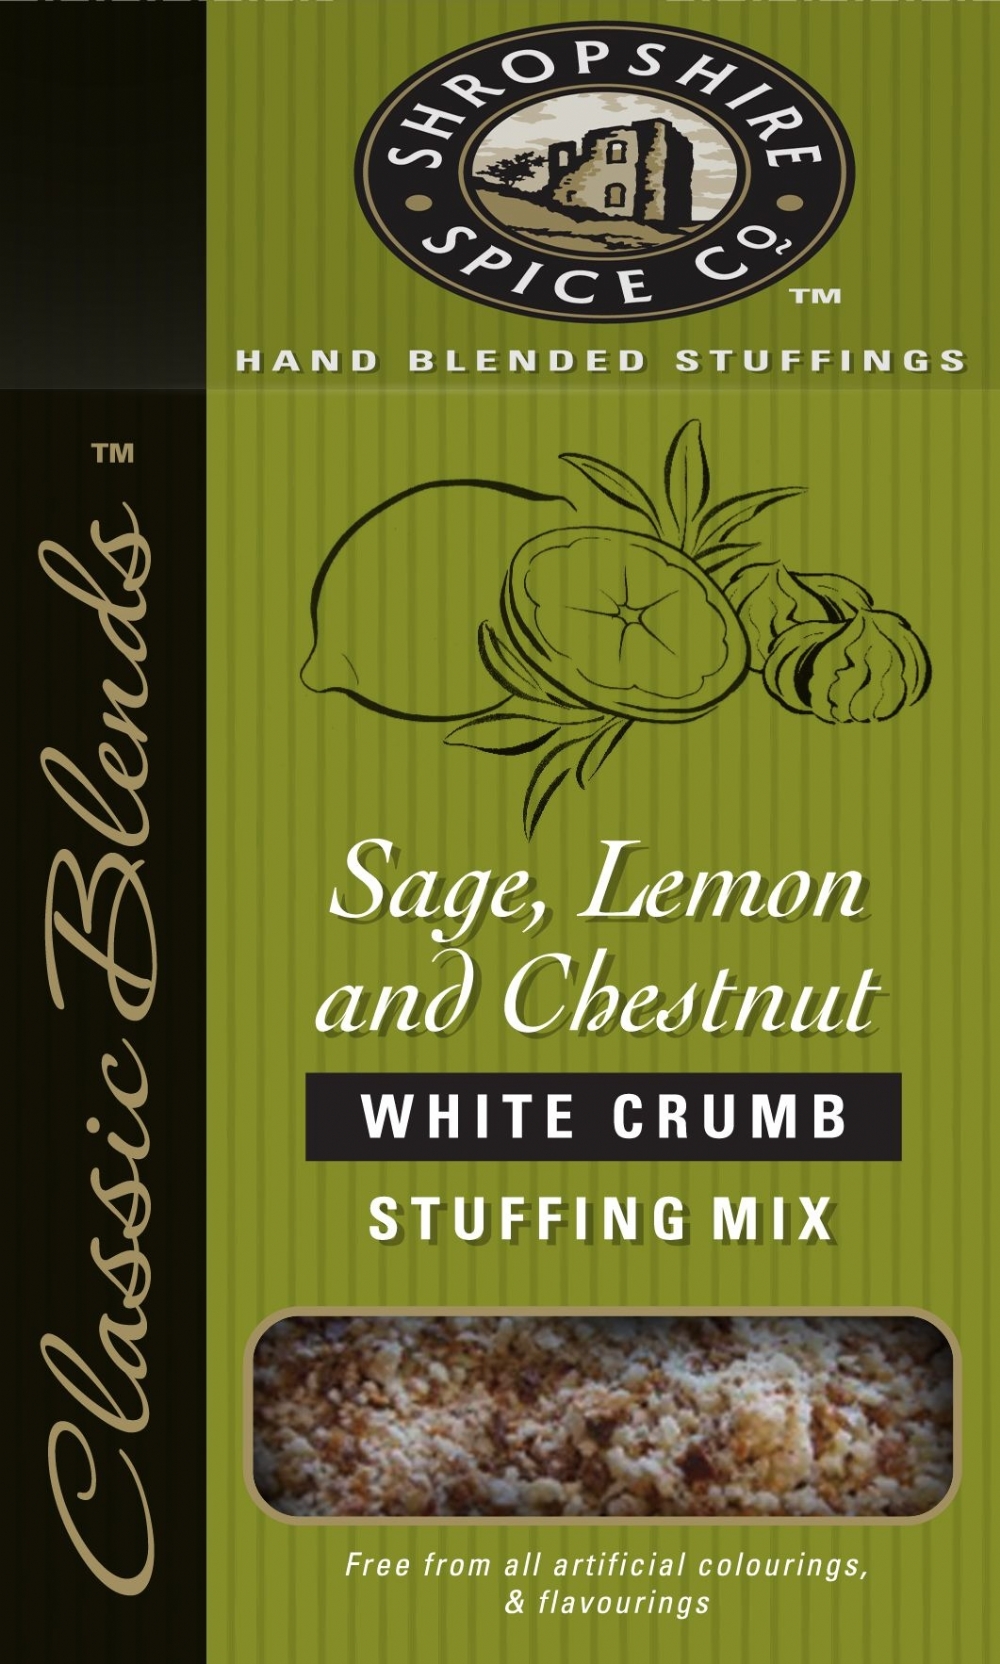 SHROP. SPICE Sage, Lemon & Chestnut White Stuffing Mix 150g